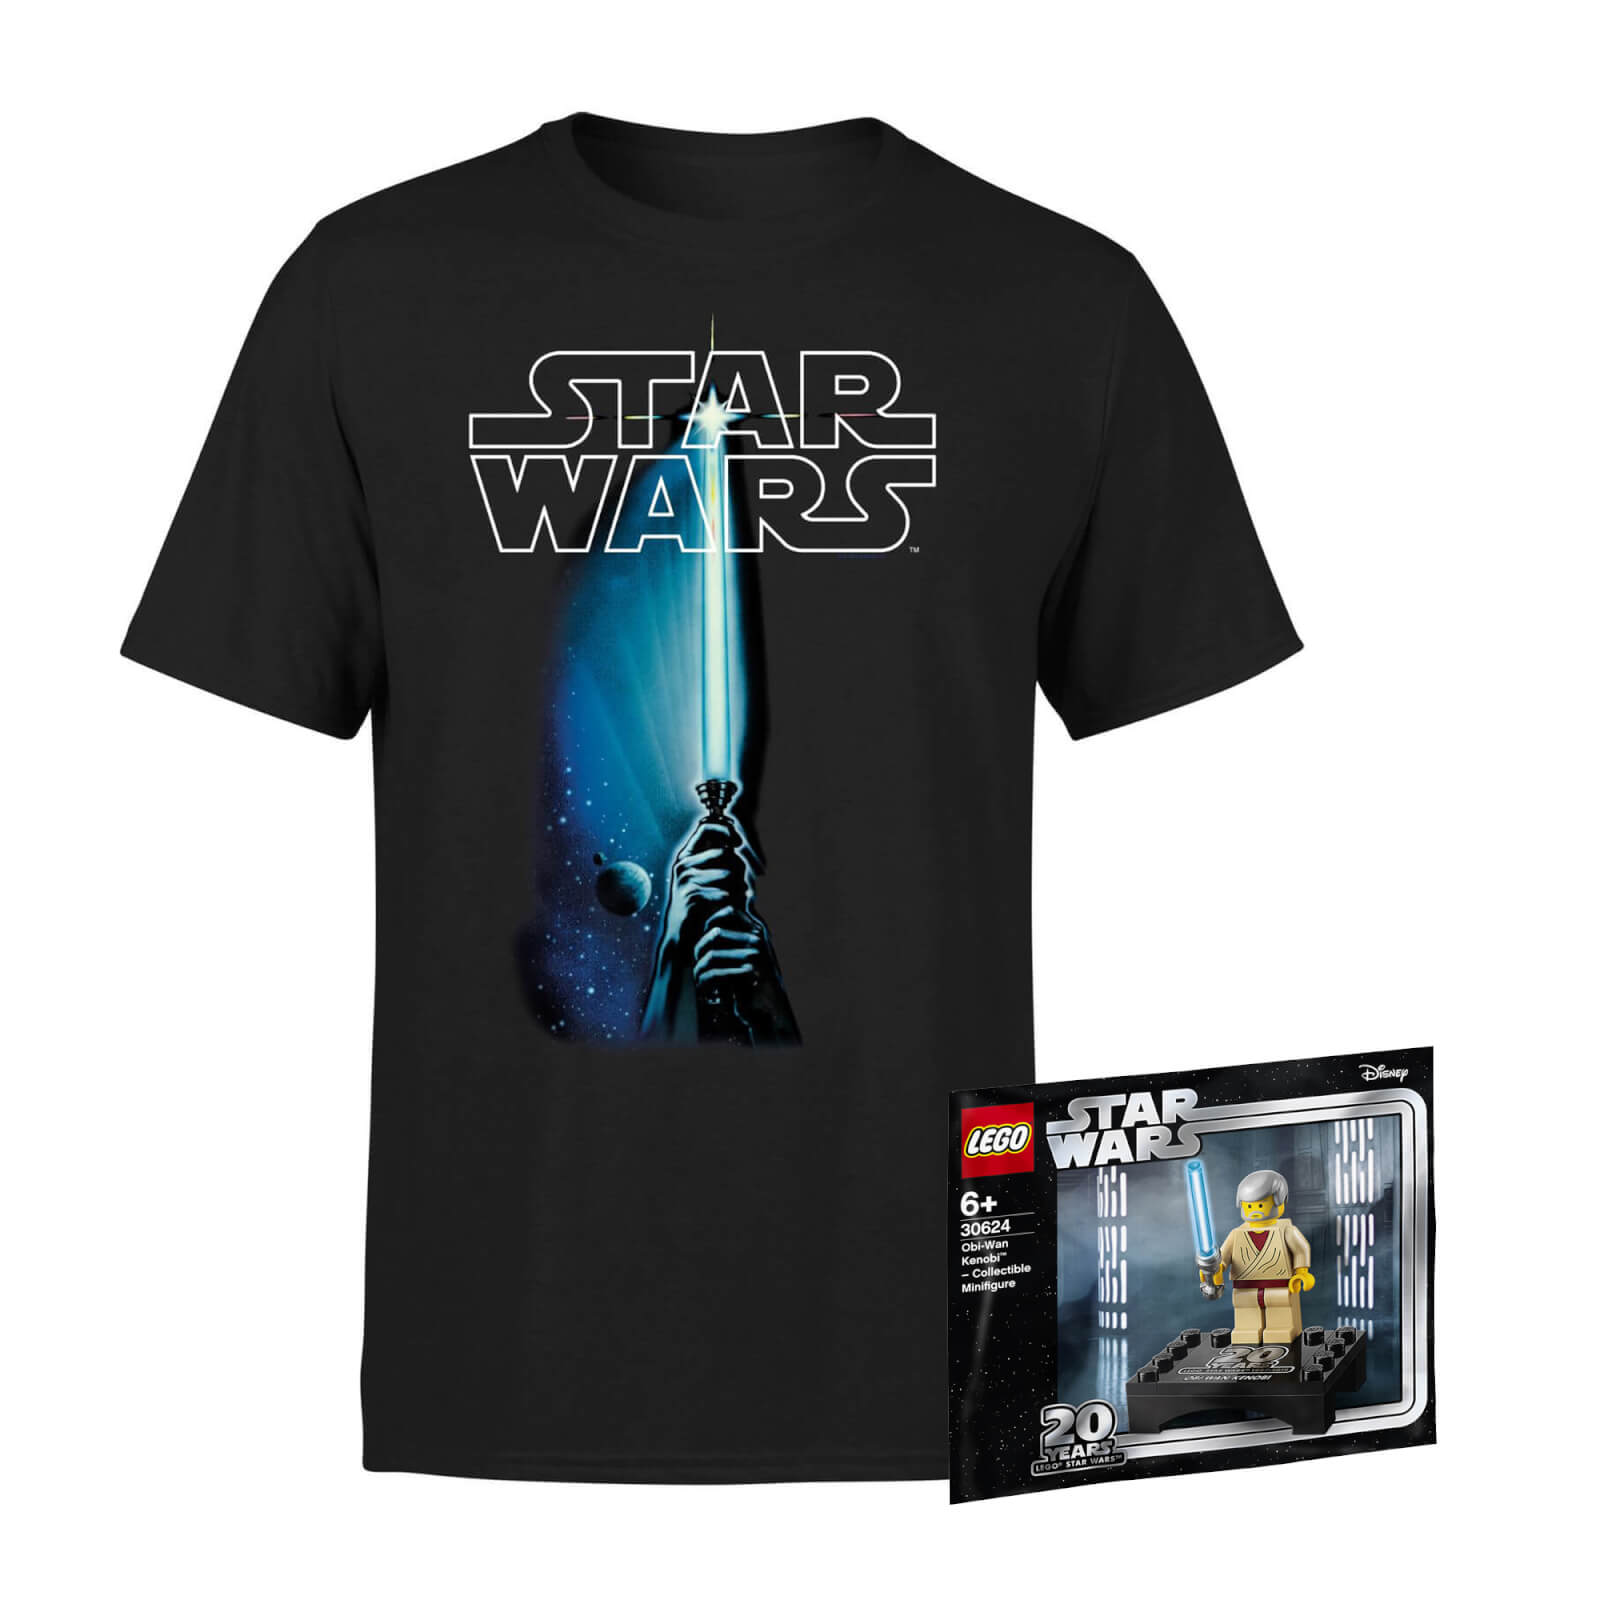 Star Wars Tee & LEGO Minifigure Bundle - Men's - XS von Star Wars